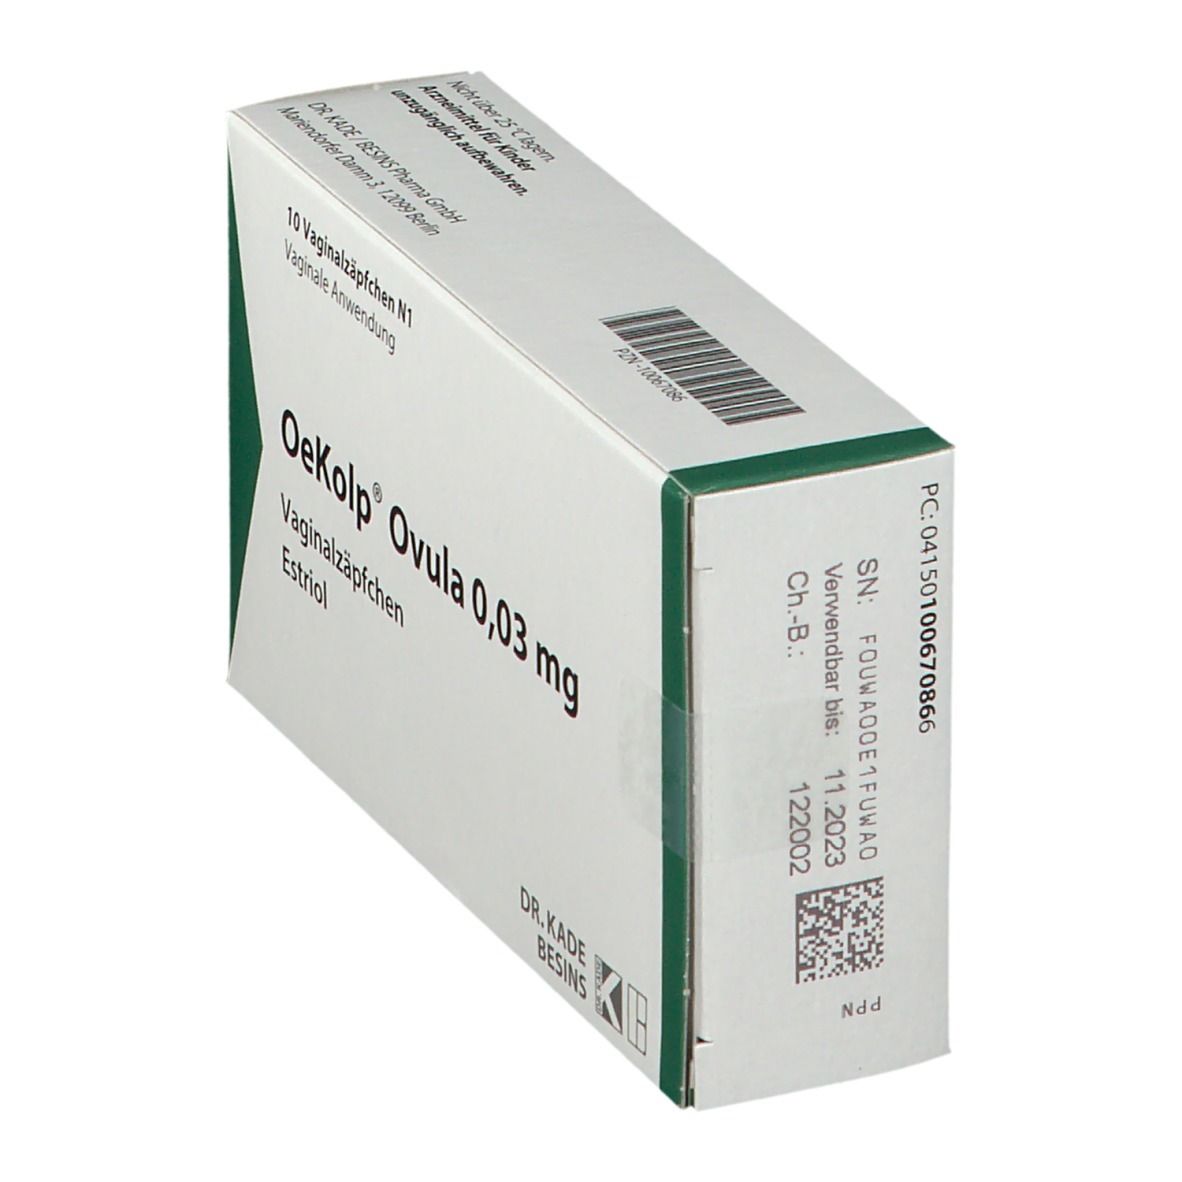 Oekolp® Ovula 0,03 mg